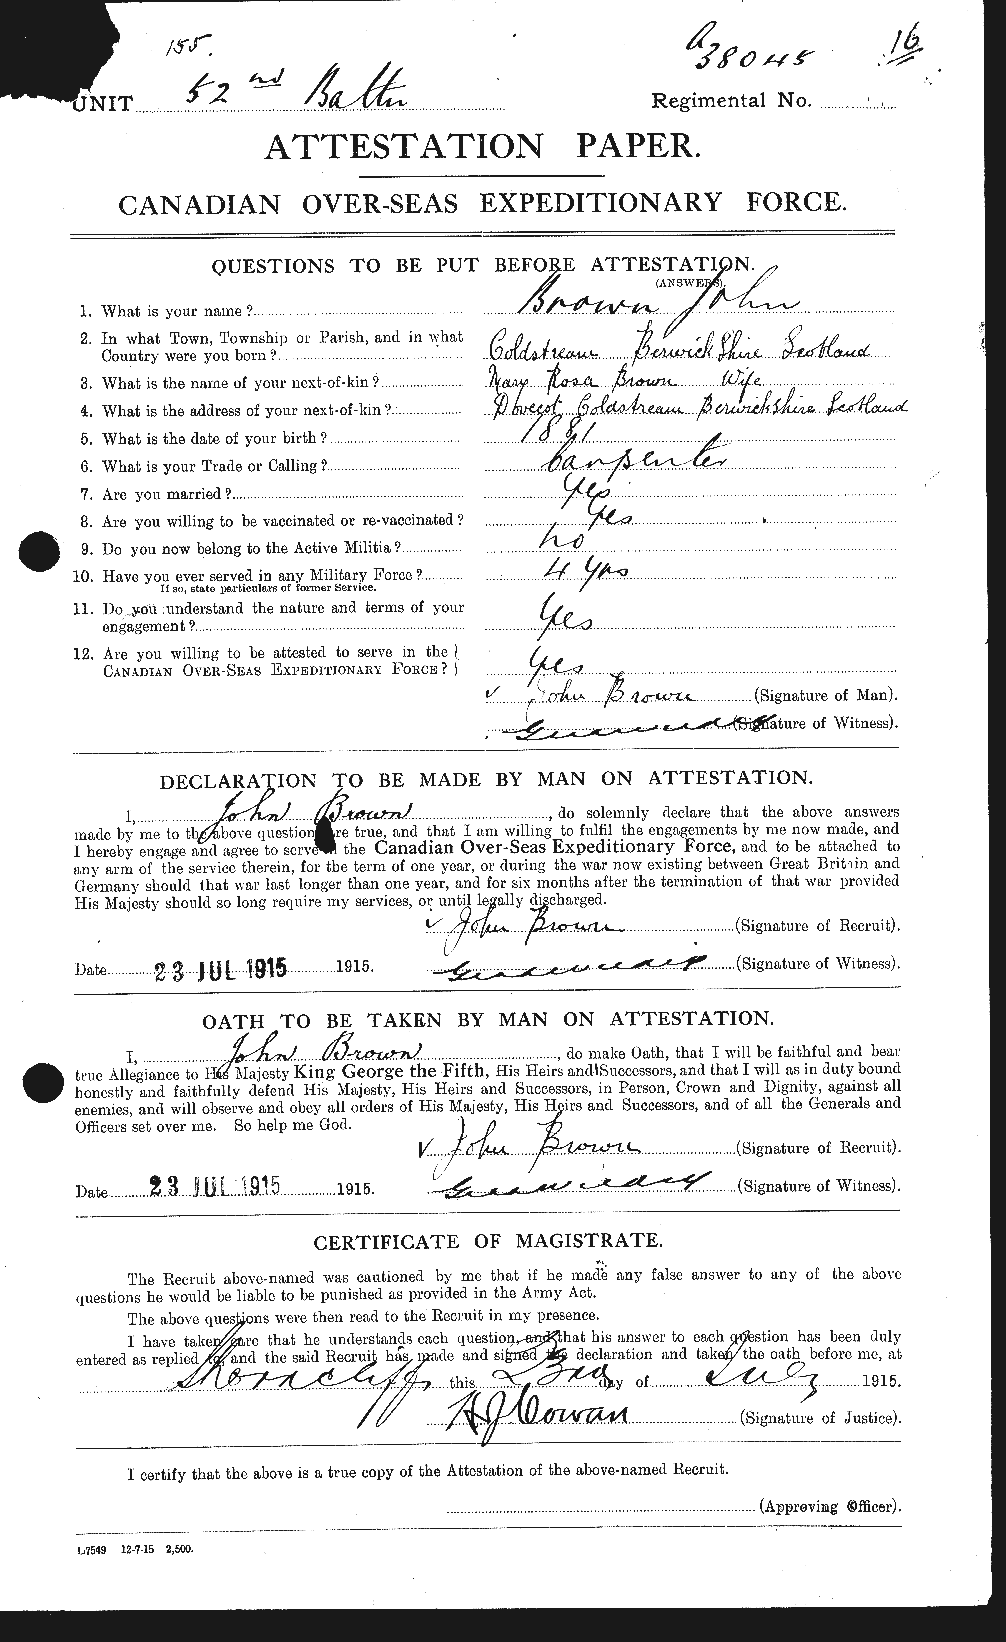 Dossiers du Personnel de la Première Guerre mondiale - CEC 264531a